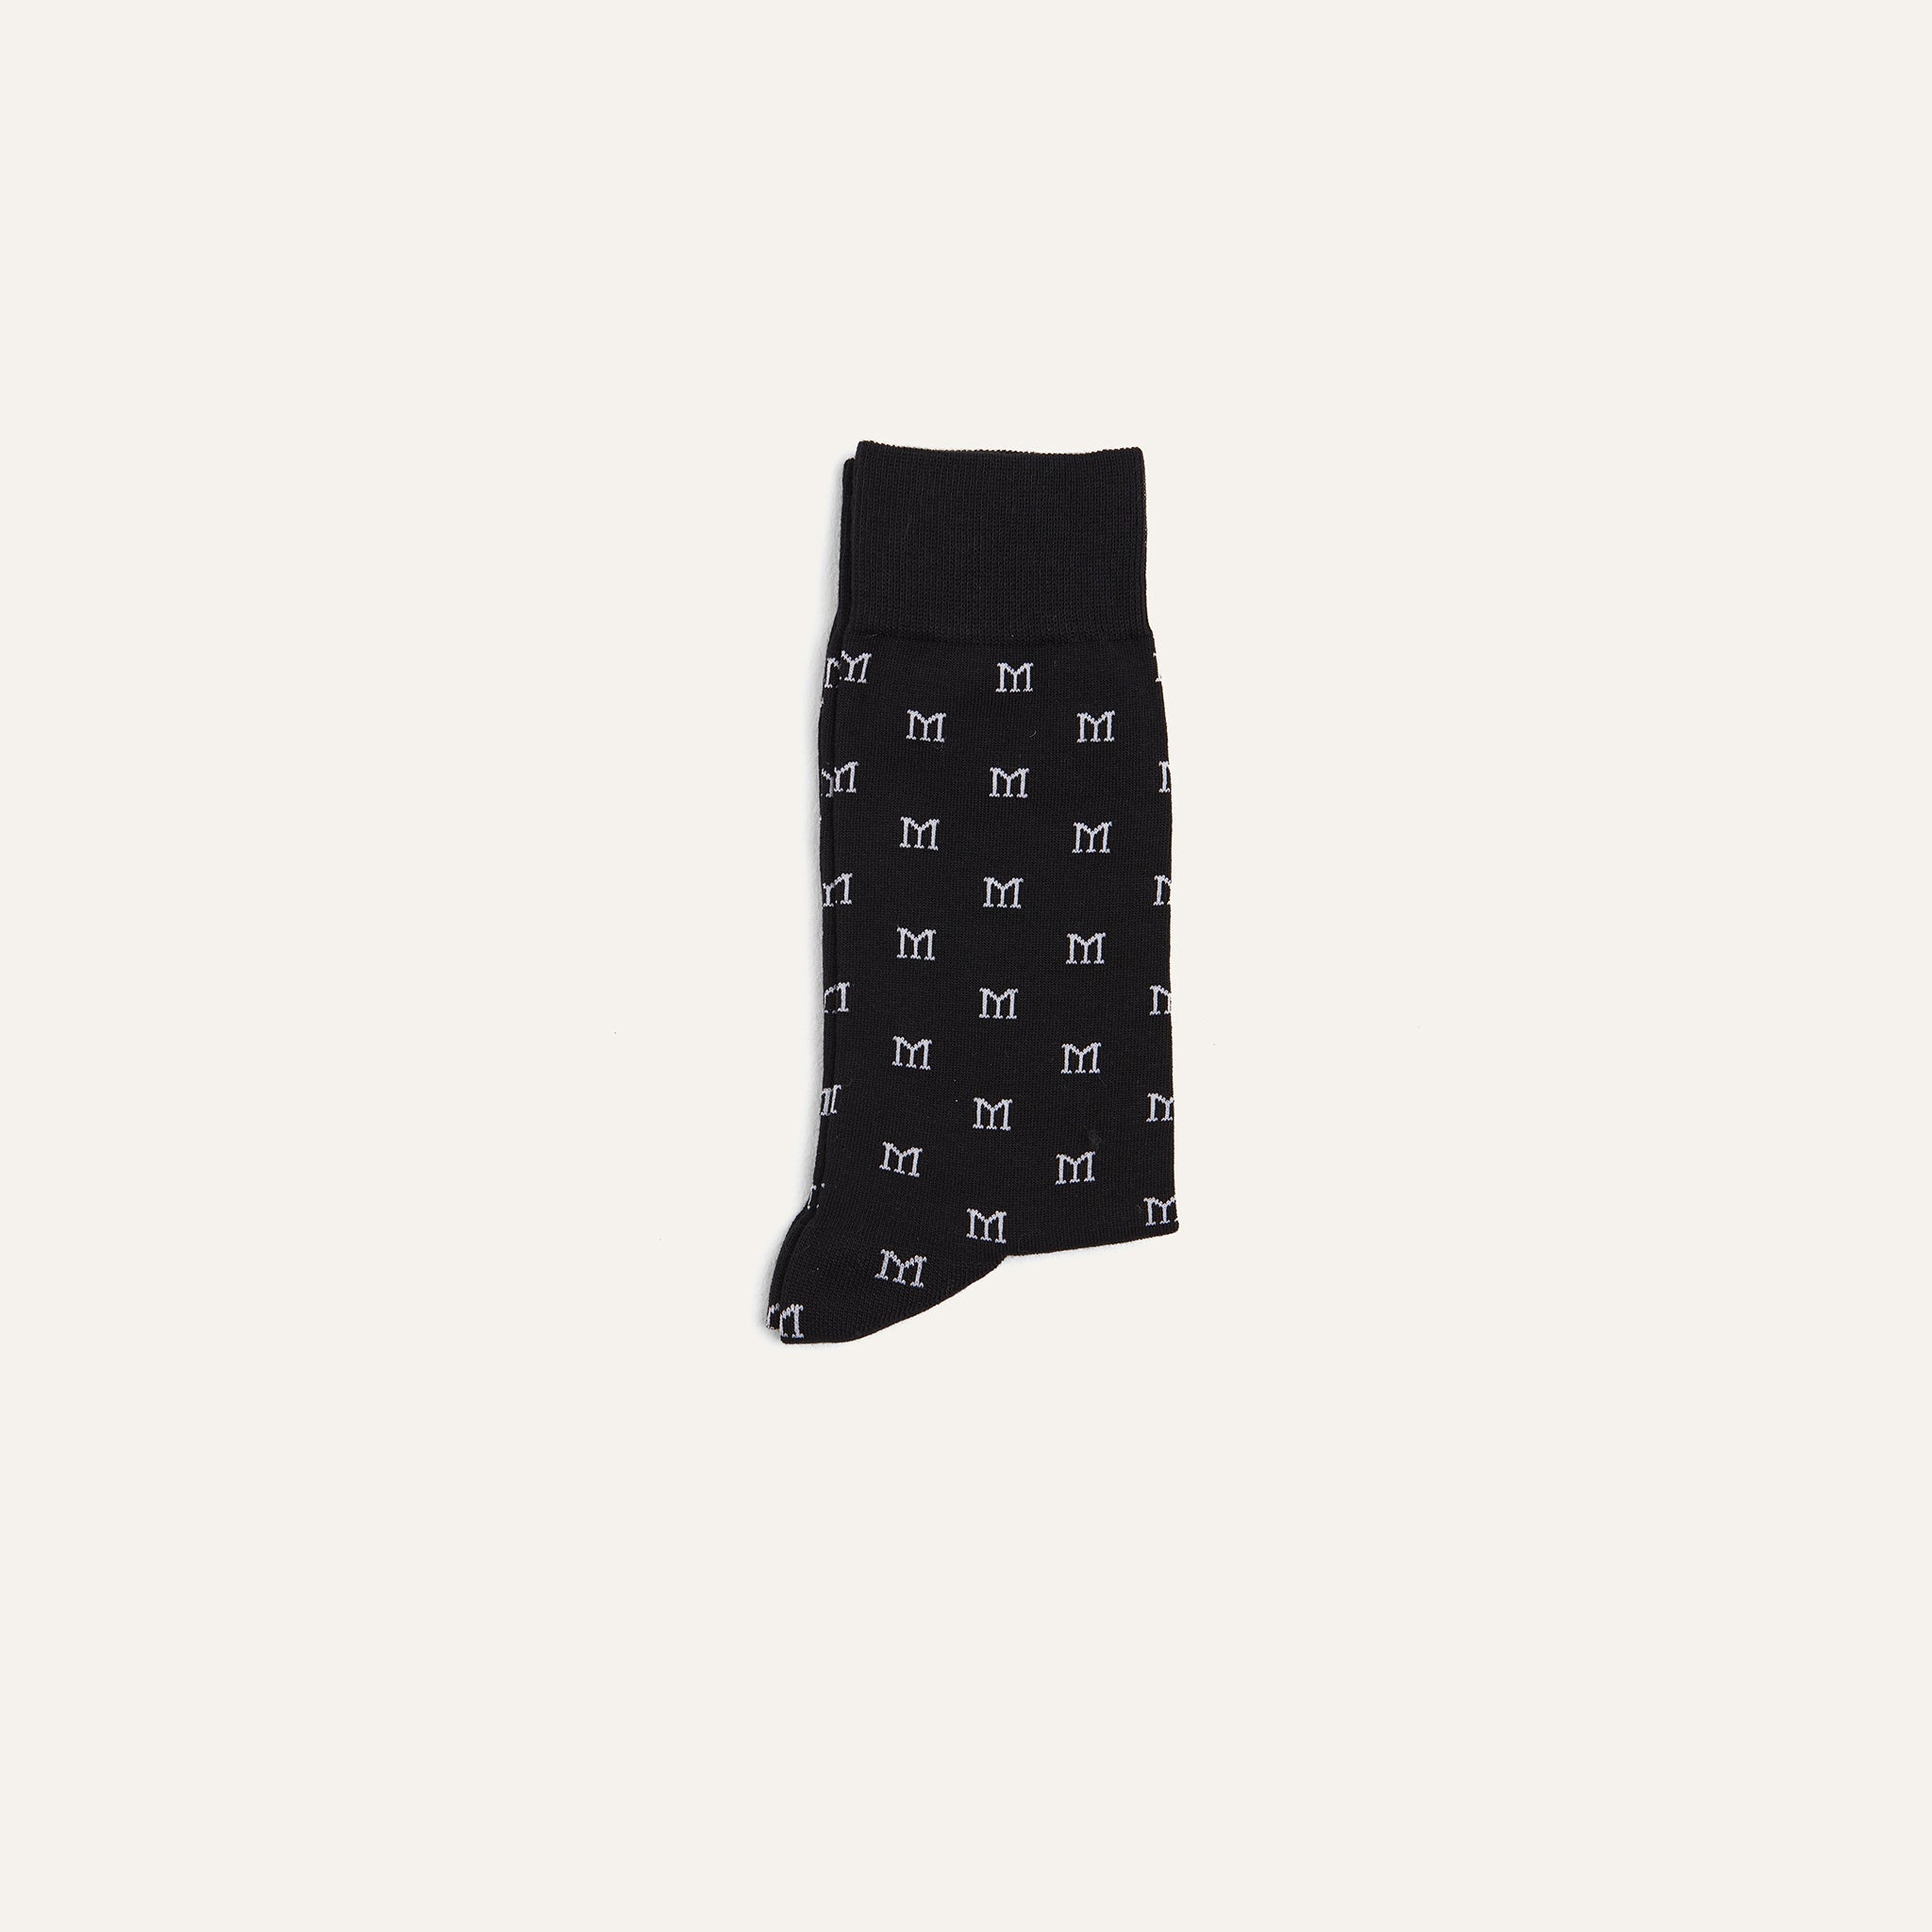 Dress Socks Monogram 2 pack Black - Mason Garments